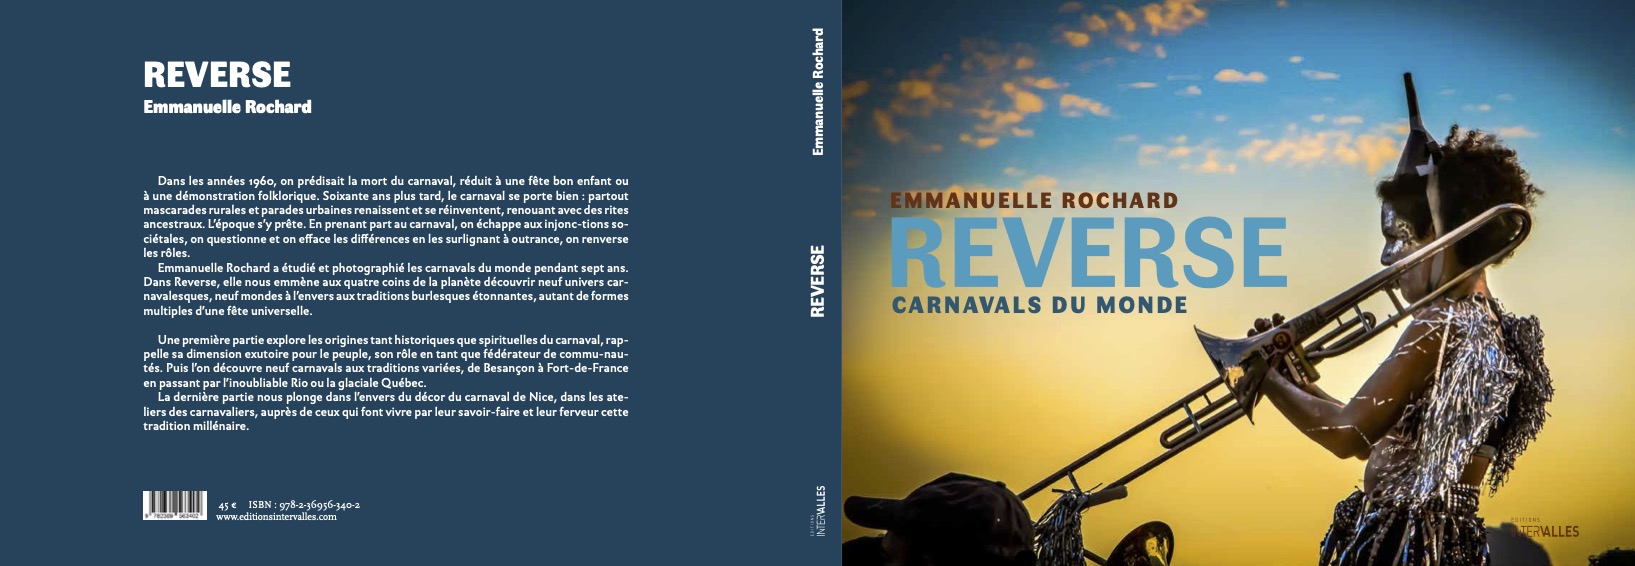 Couverture livre Reverse, carnaval du monde Emmanuelle Rochard